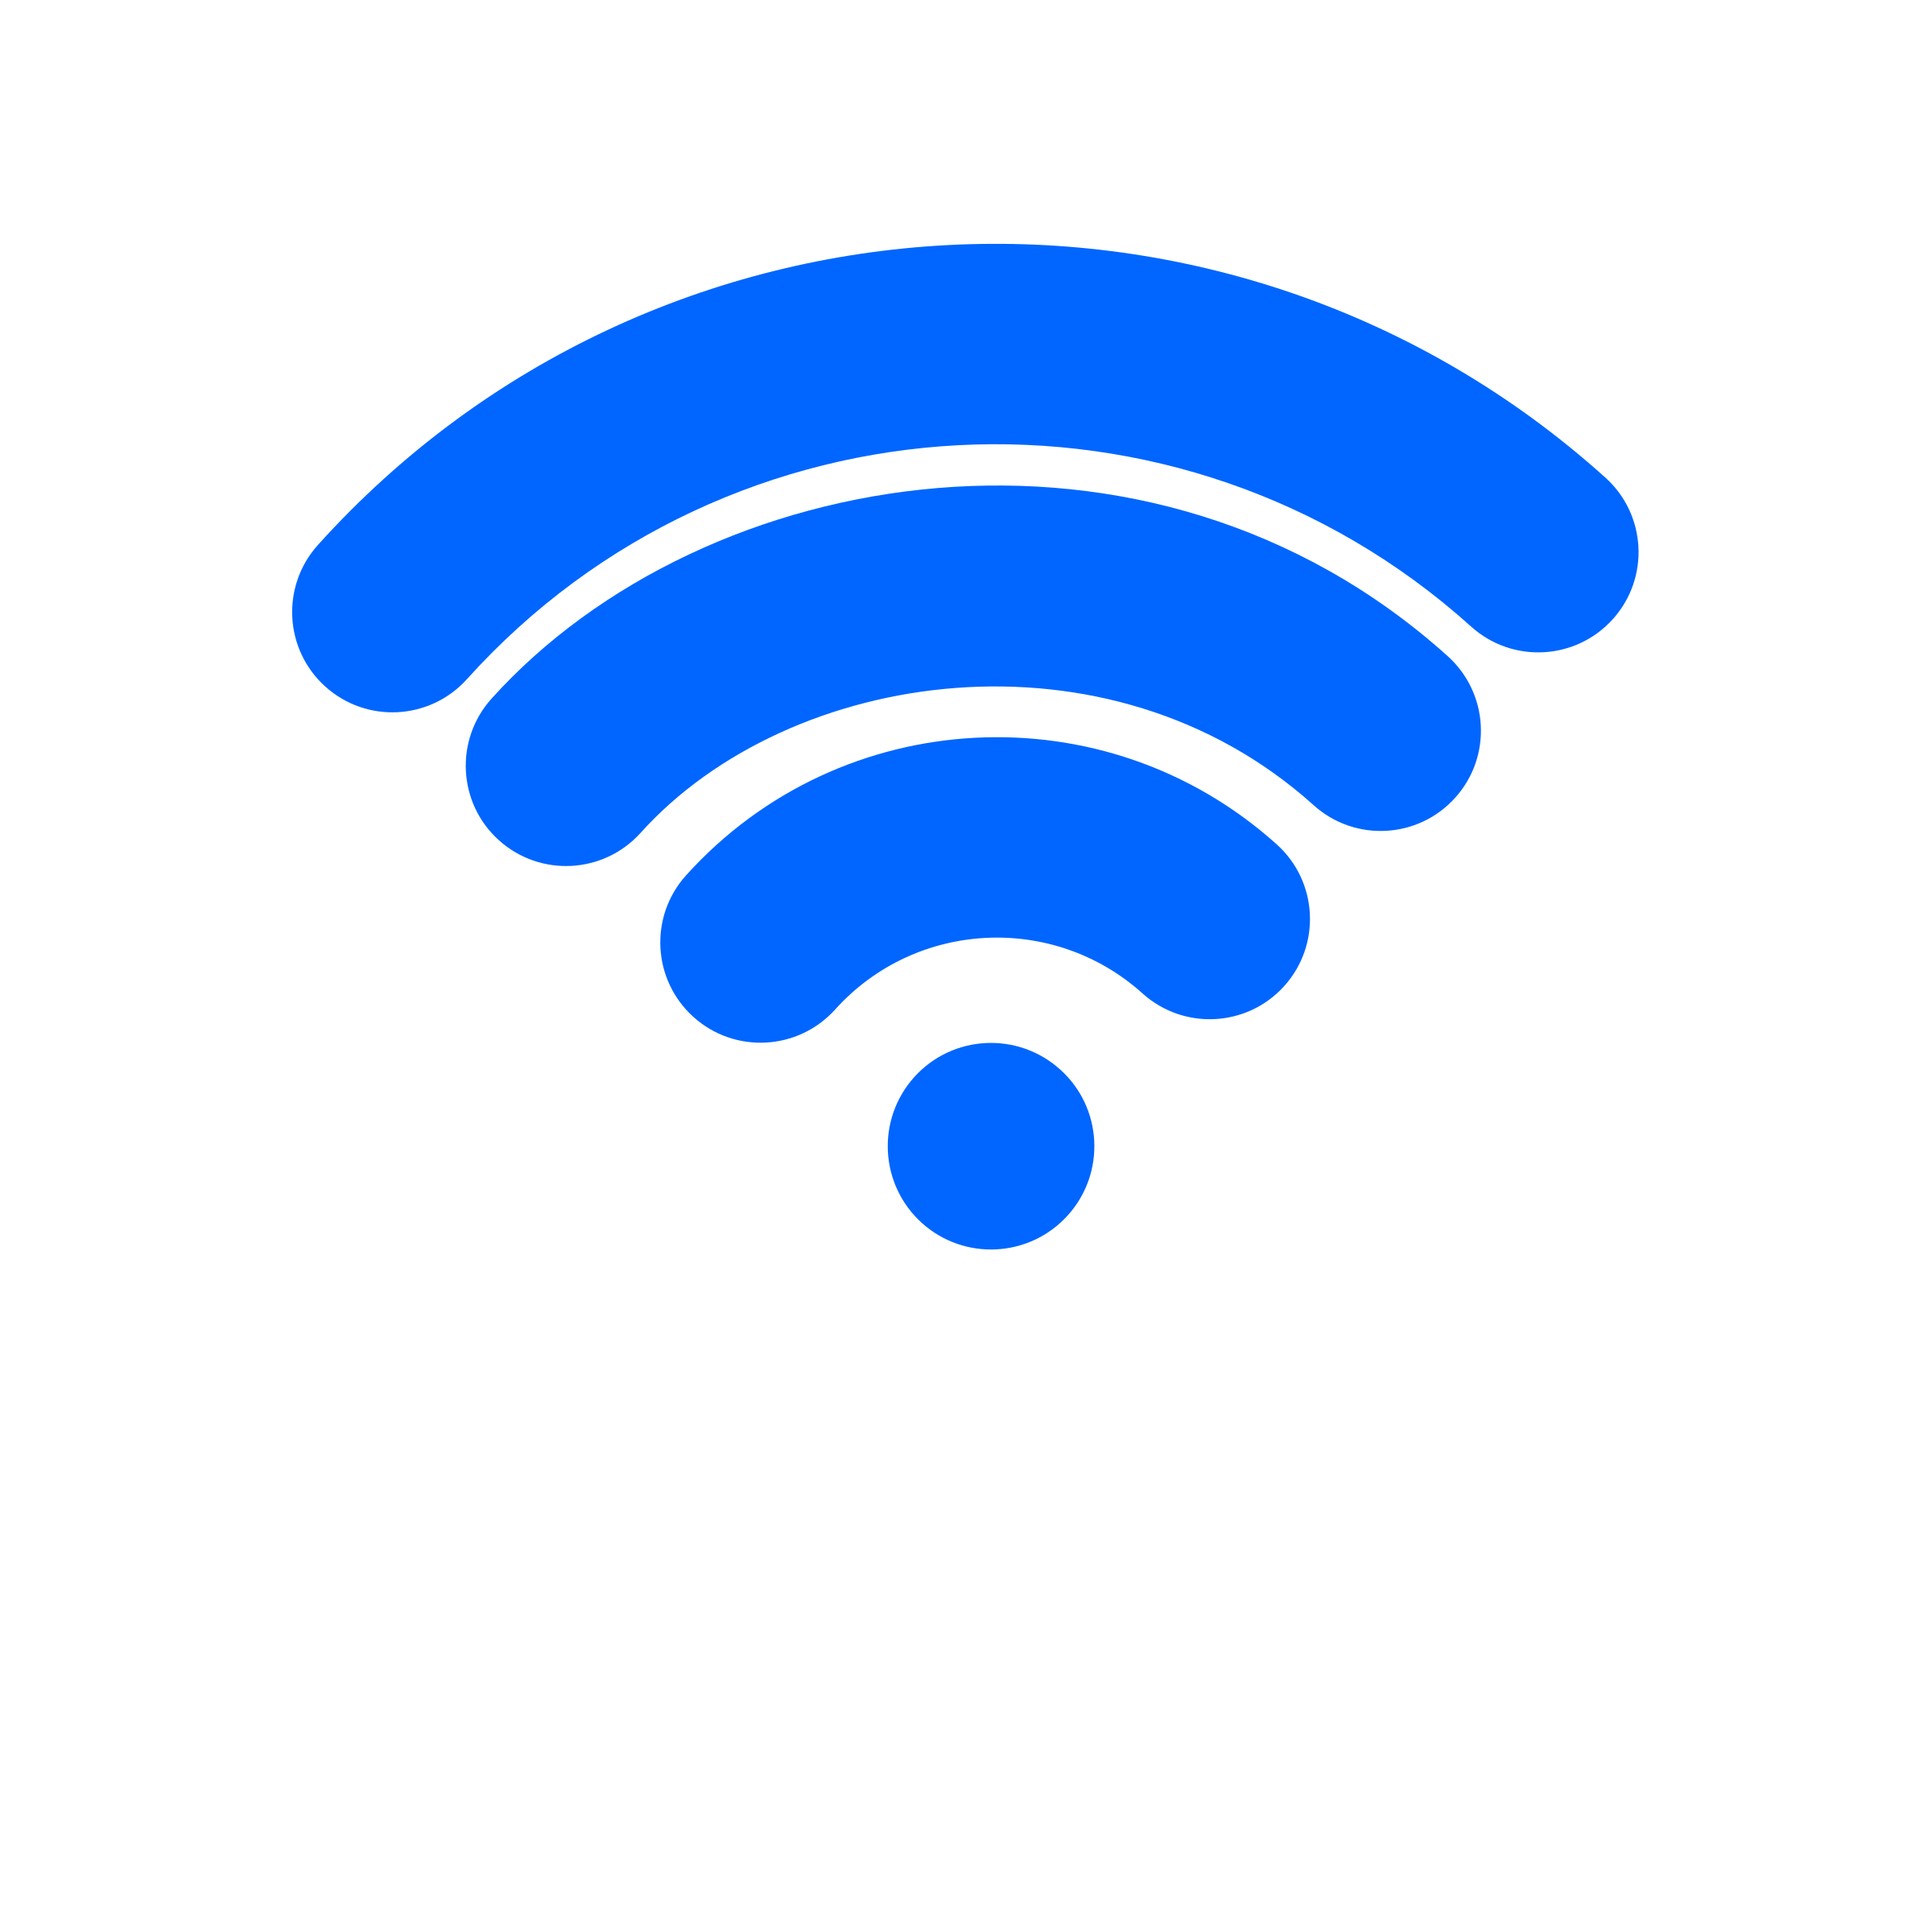 Free Wifi Symbol Cliparts, Download Free Clip Art, Free Clip.